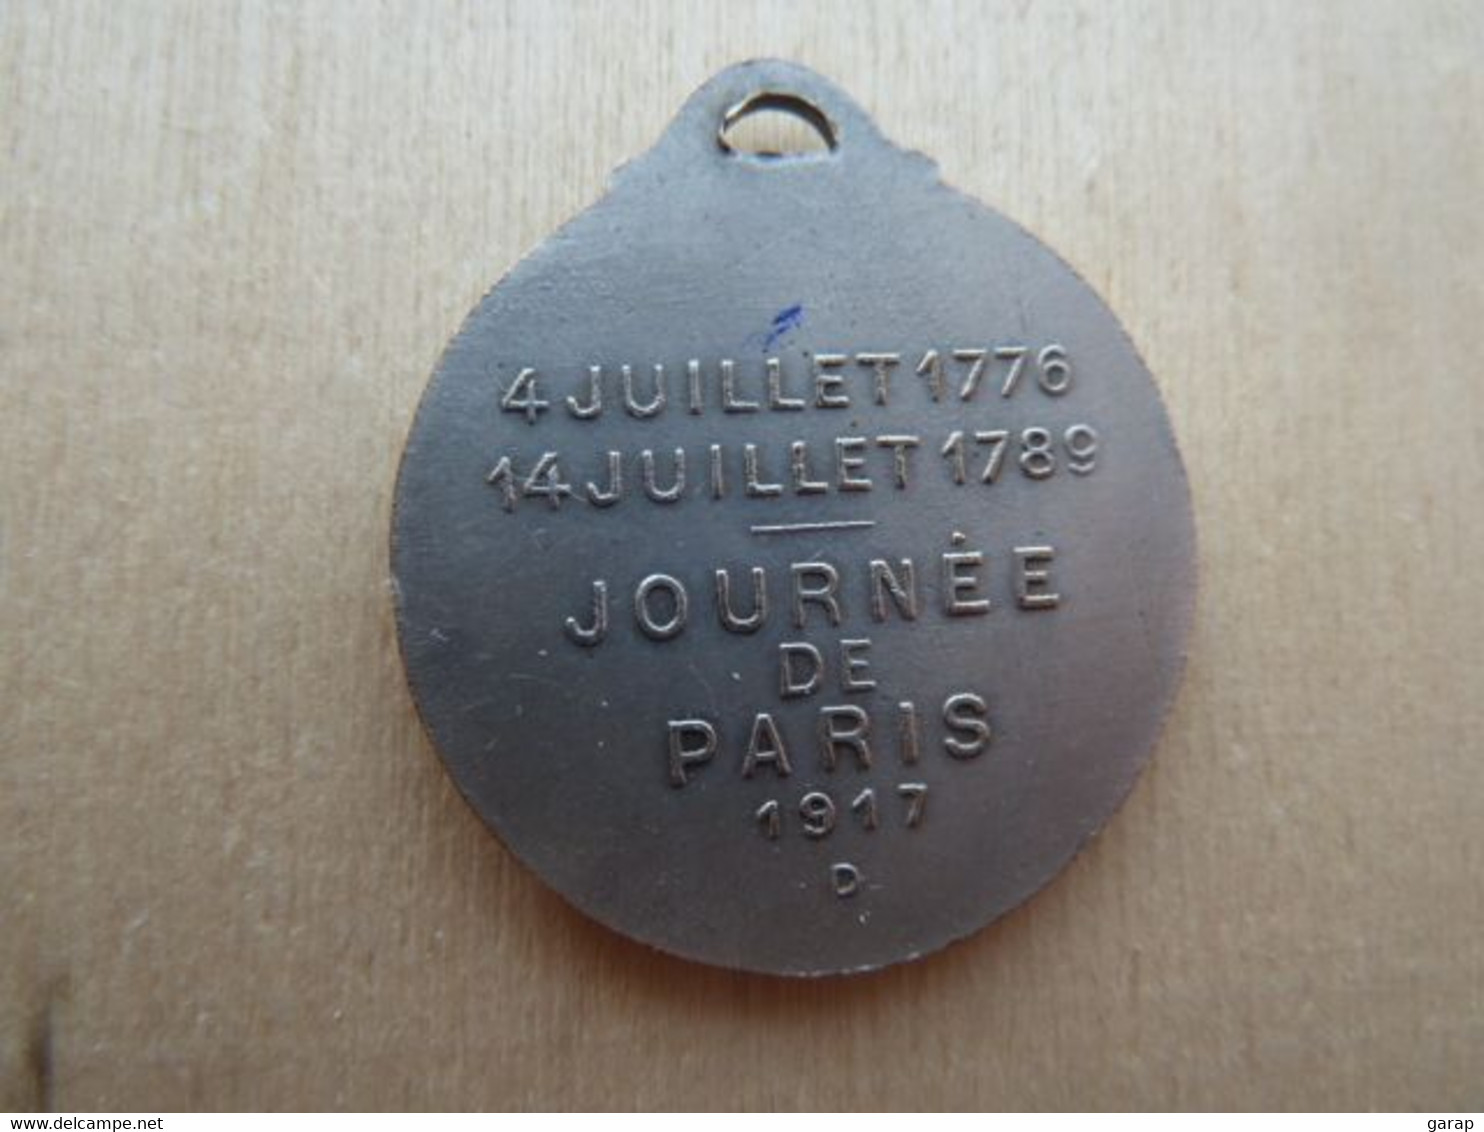 DA-126 Médaille Métal Gris Washington Lafayette Signée Gaston Lavrillier Paris -art.Journées De Paris 1917 - Magazines & Catalogs